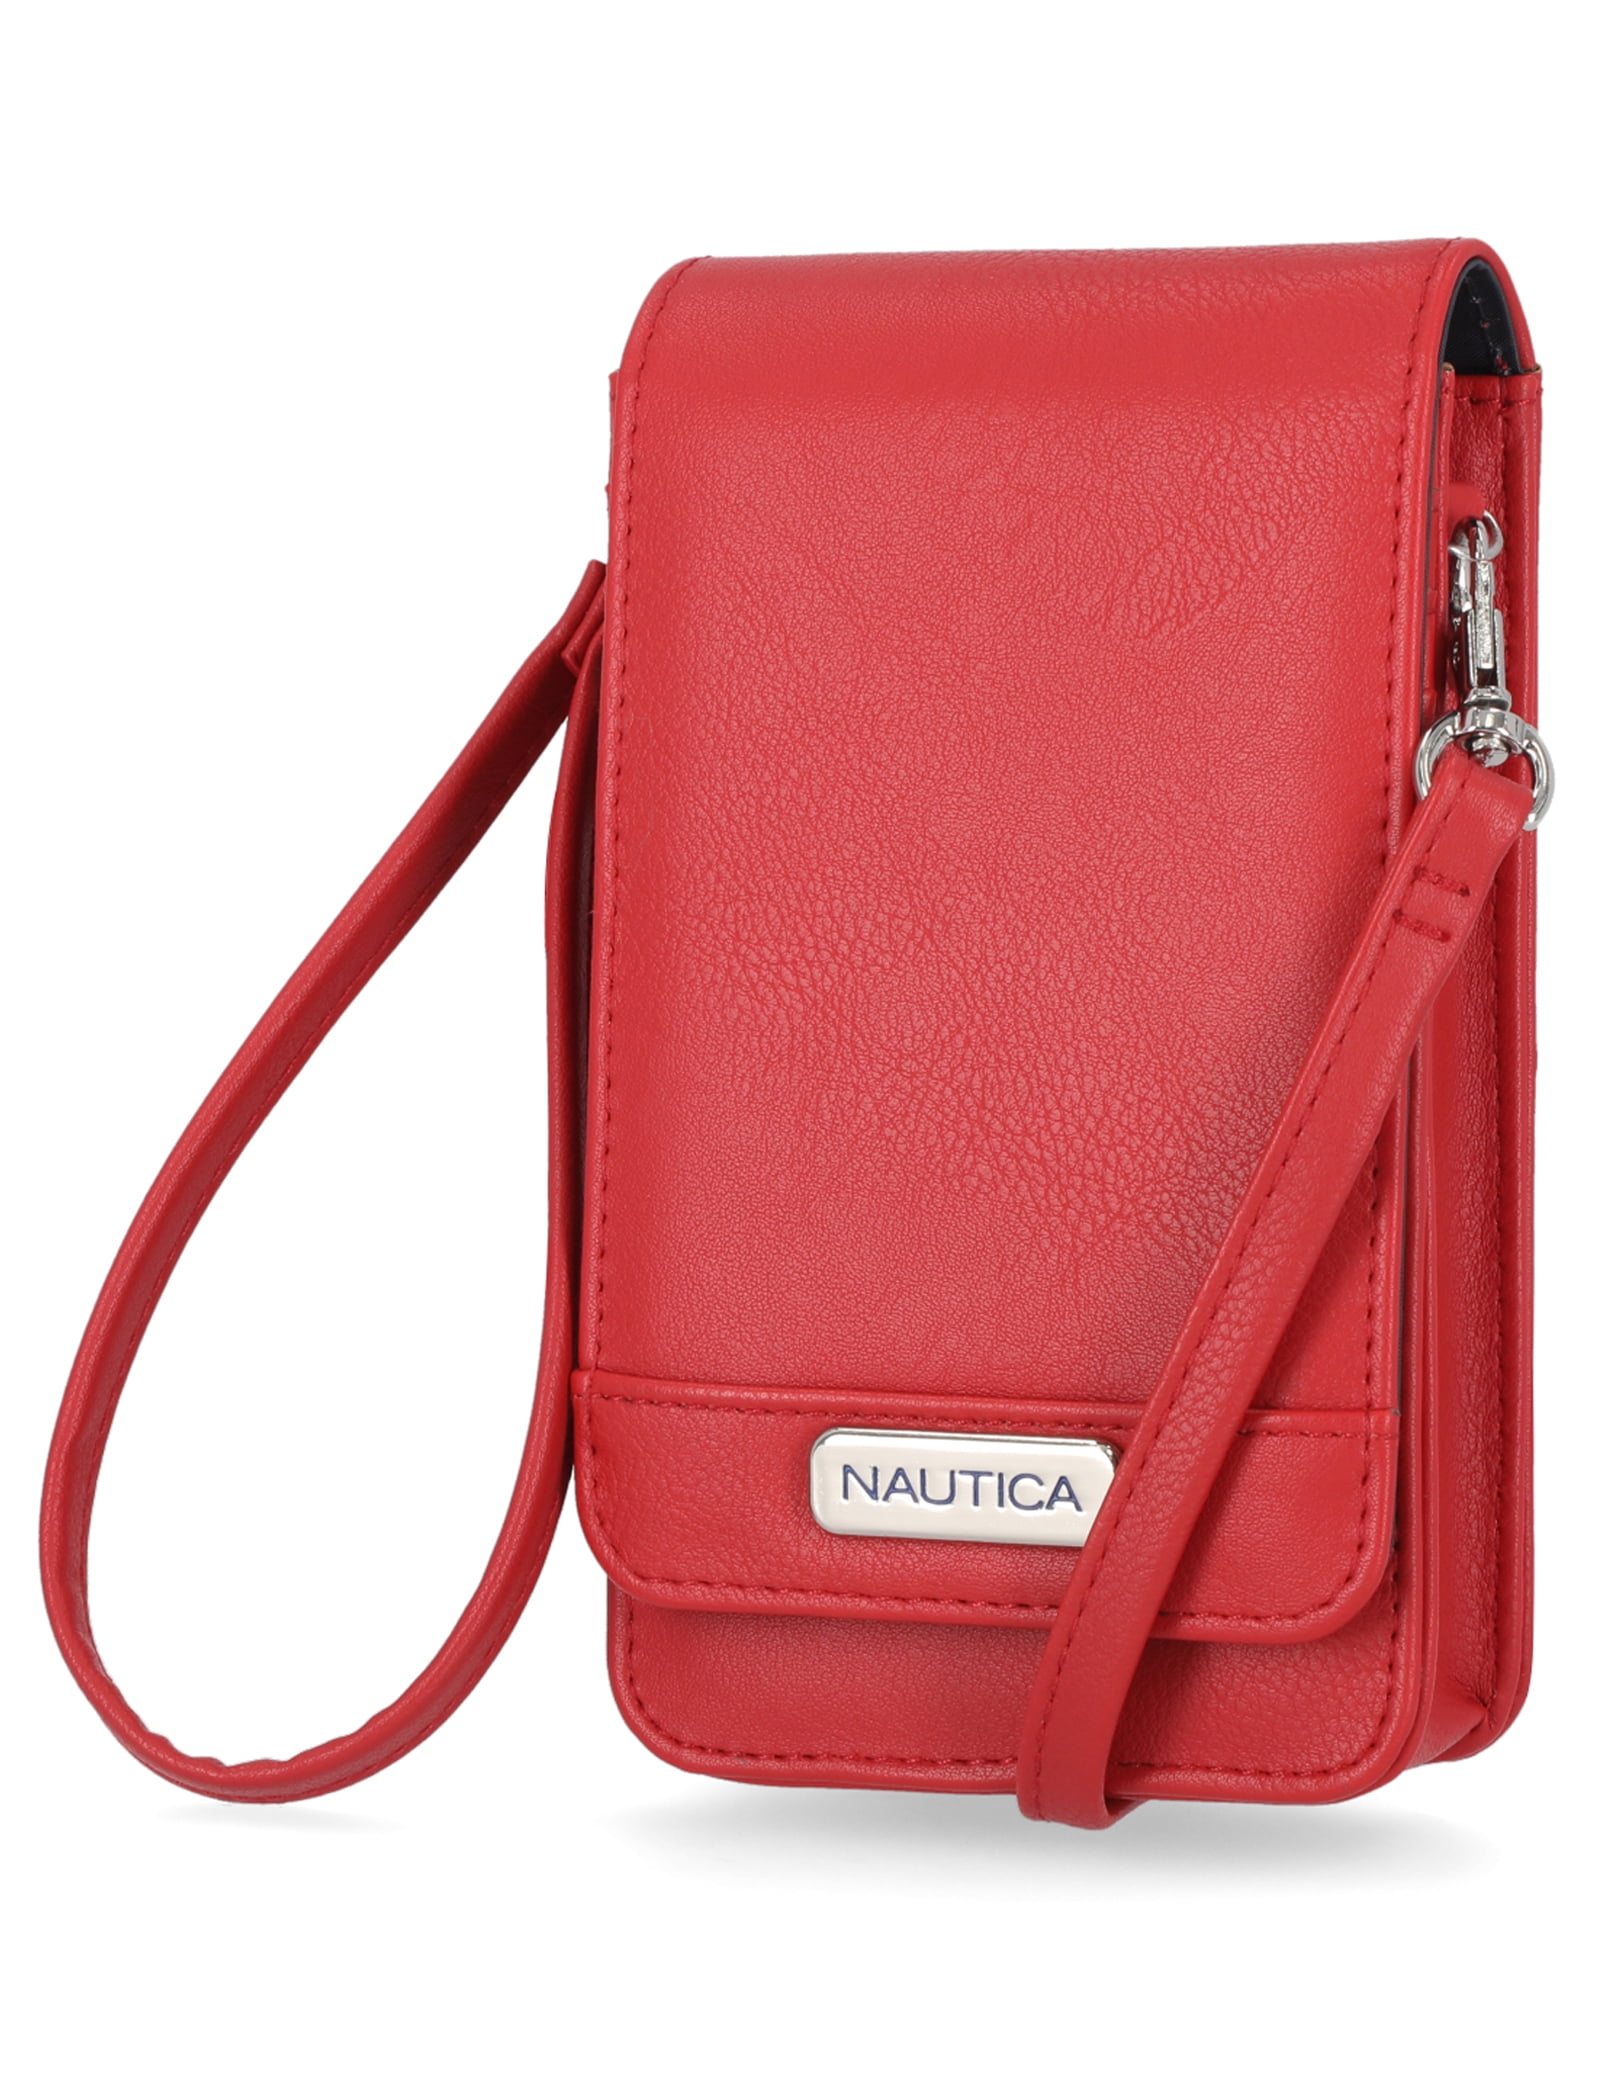 NAUTICA Tan Sling Bag NTSL4008TAN Tan - Price in India | Flipkart.com